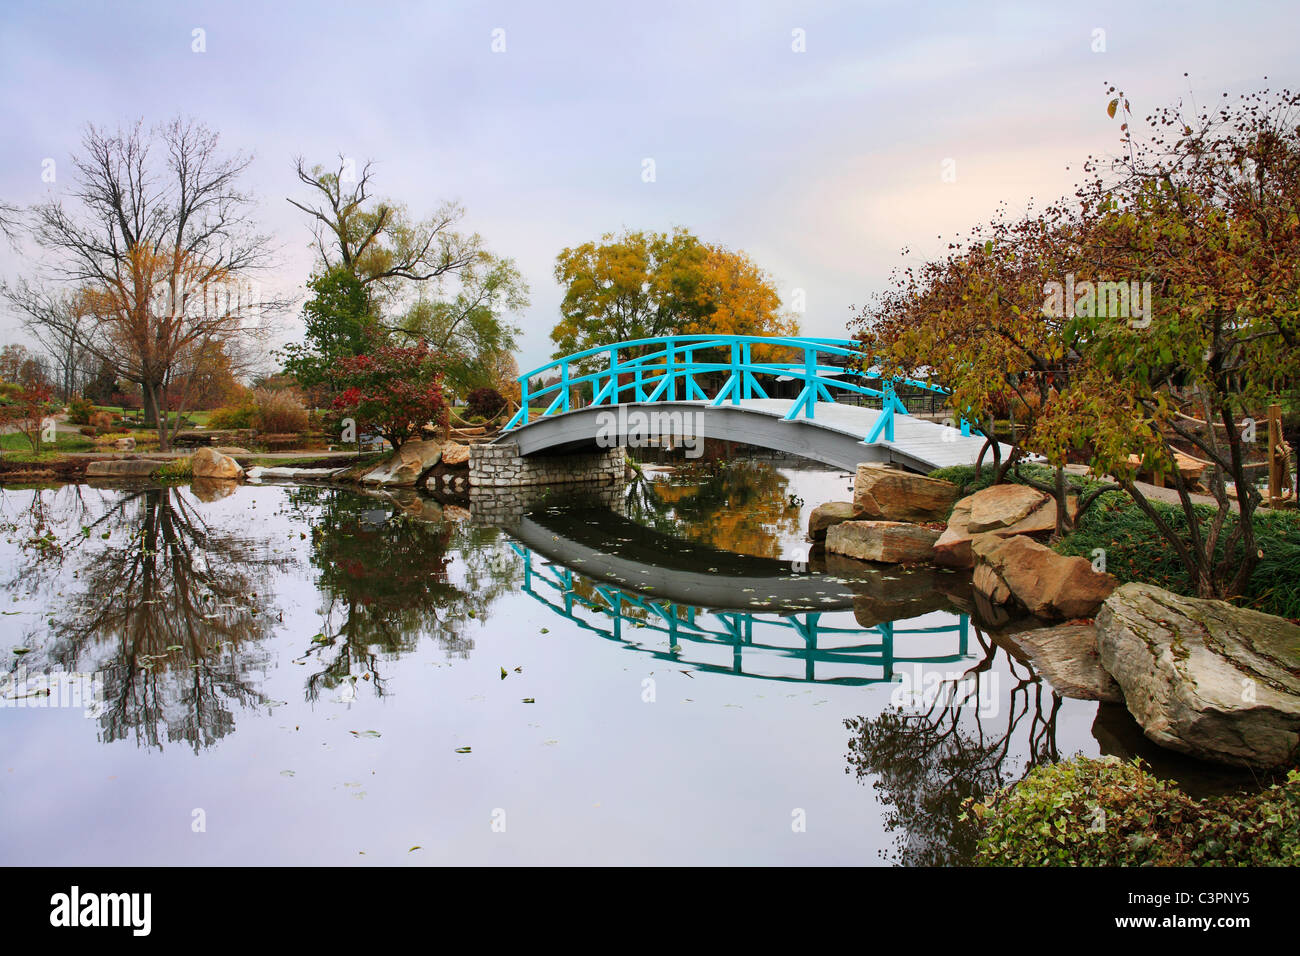 Eine pastorale Szene eine japanische Brücke über einem ruhigen kleinen Teich an einem regnerischen Tag im Herbst, südwestlichen Ohio, USA Stockfoto